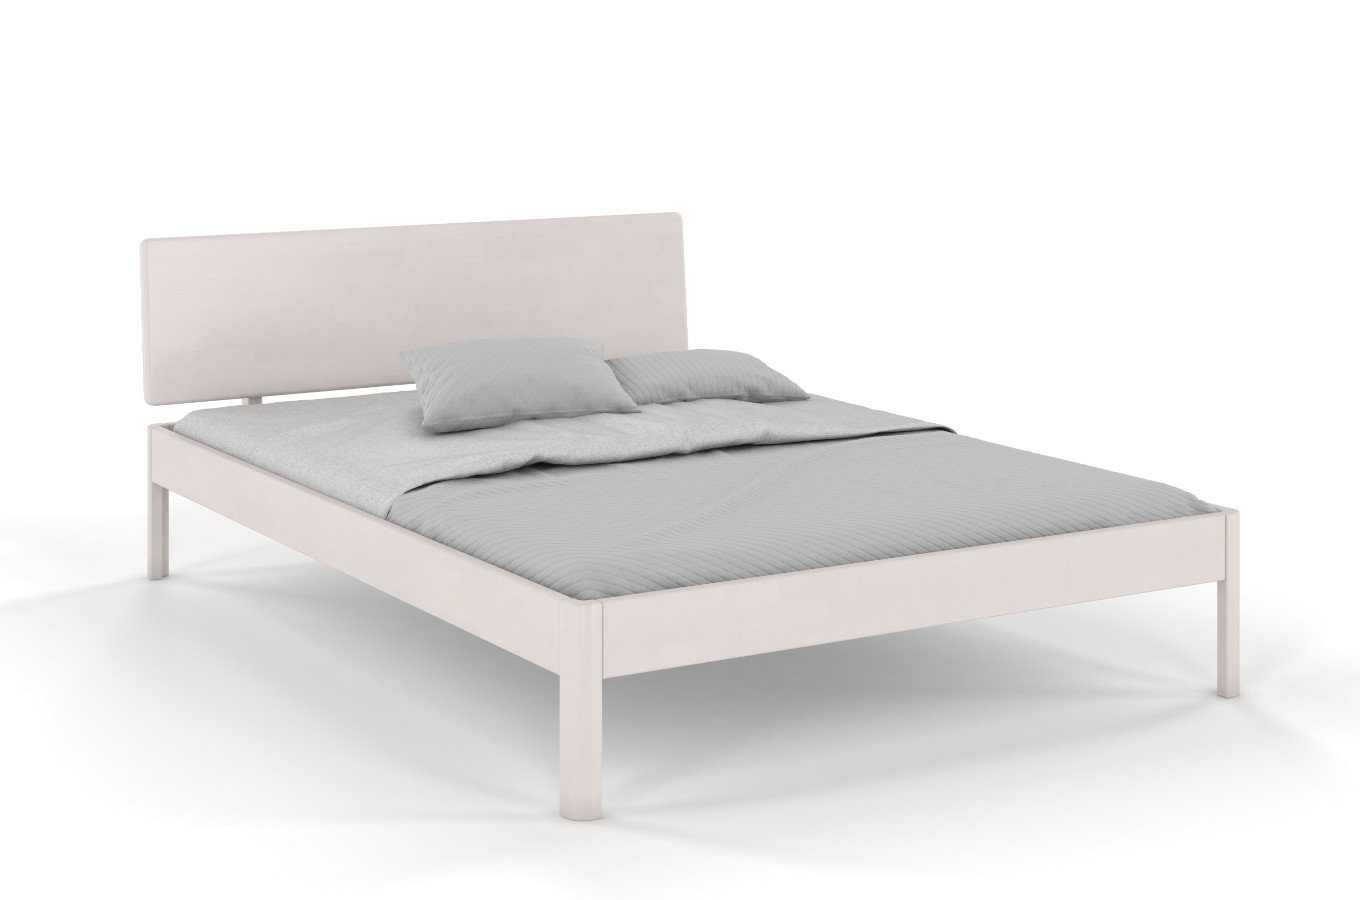  Łóżko drewniane bukowe Visby AMMER / 200x200 cm, kolor biały